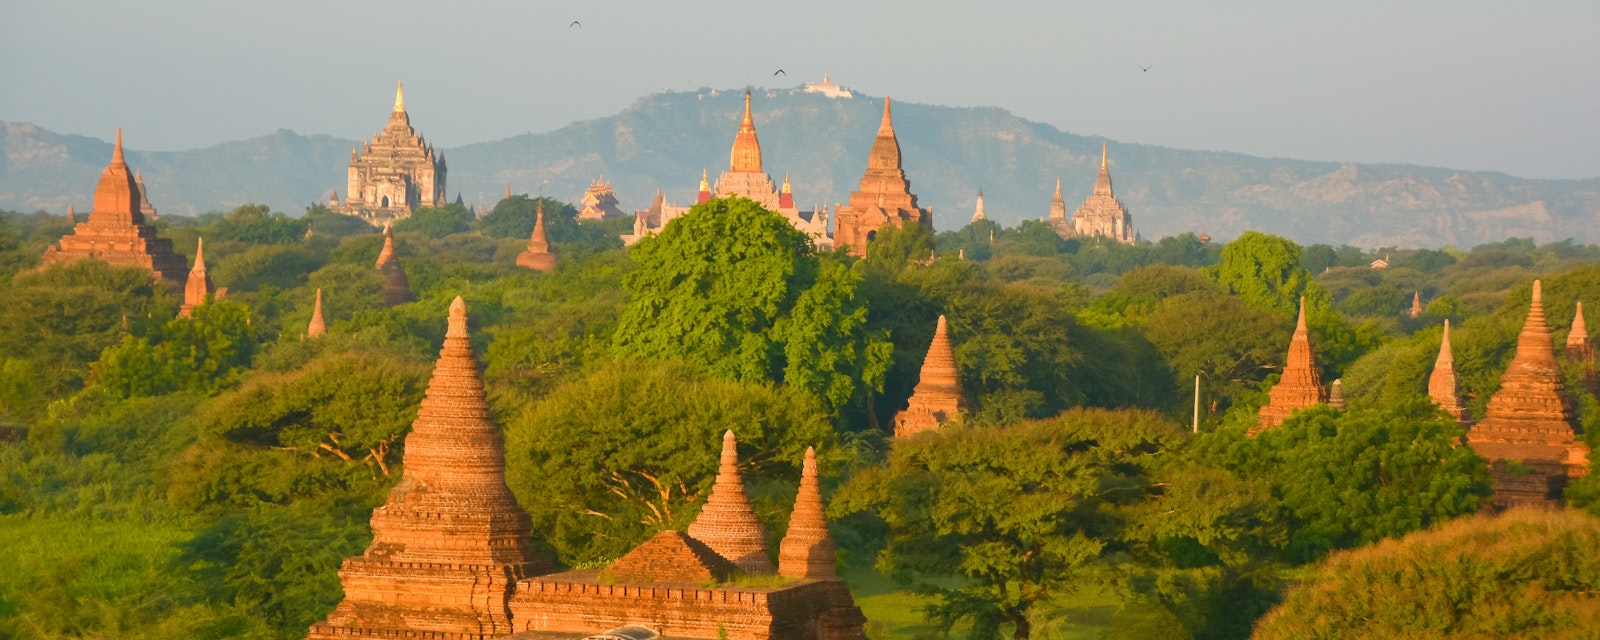 The,Temples,Of,Bagan,,Mandalay,,Myanmar.